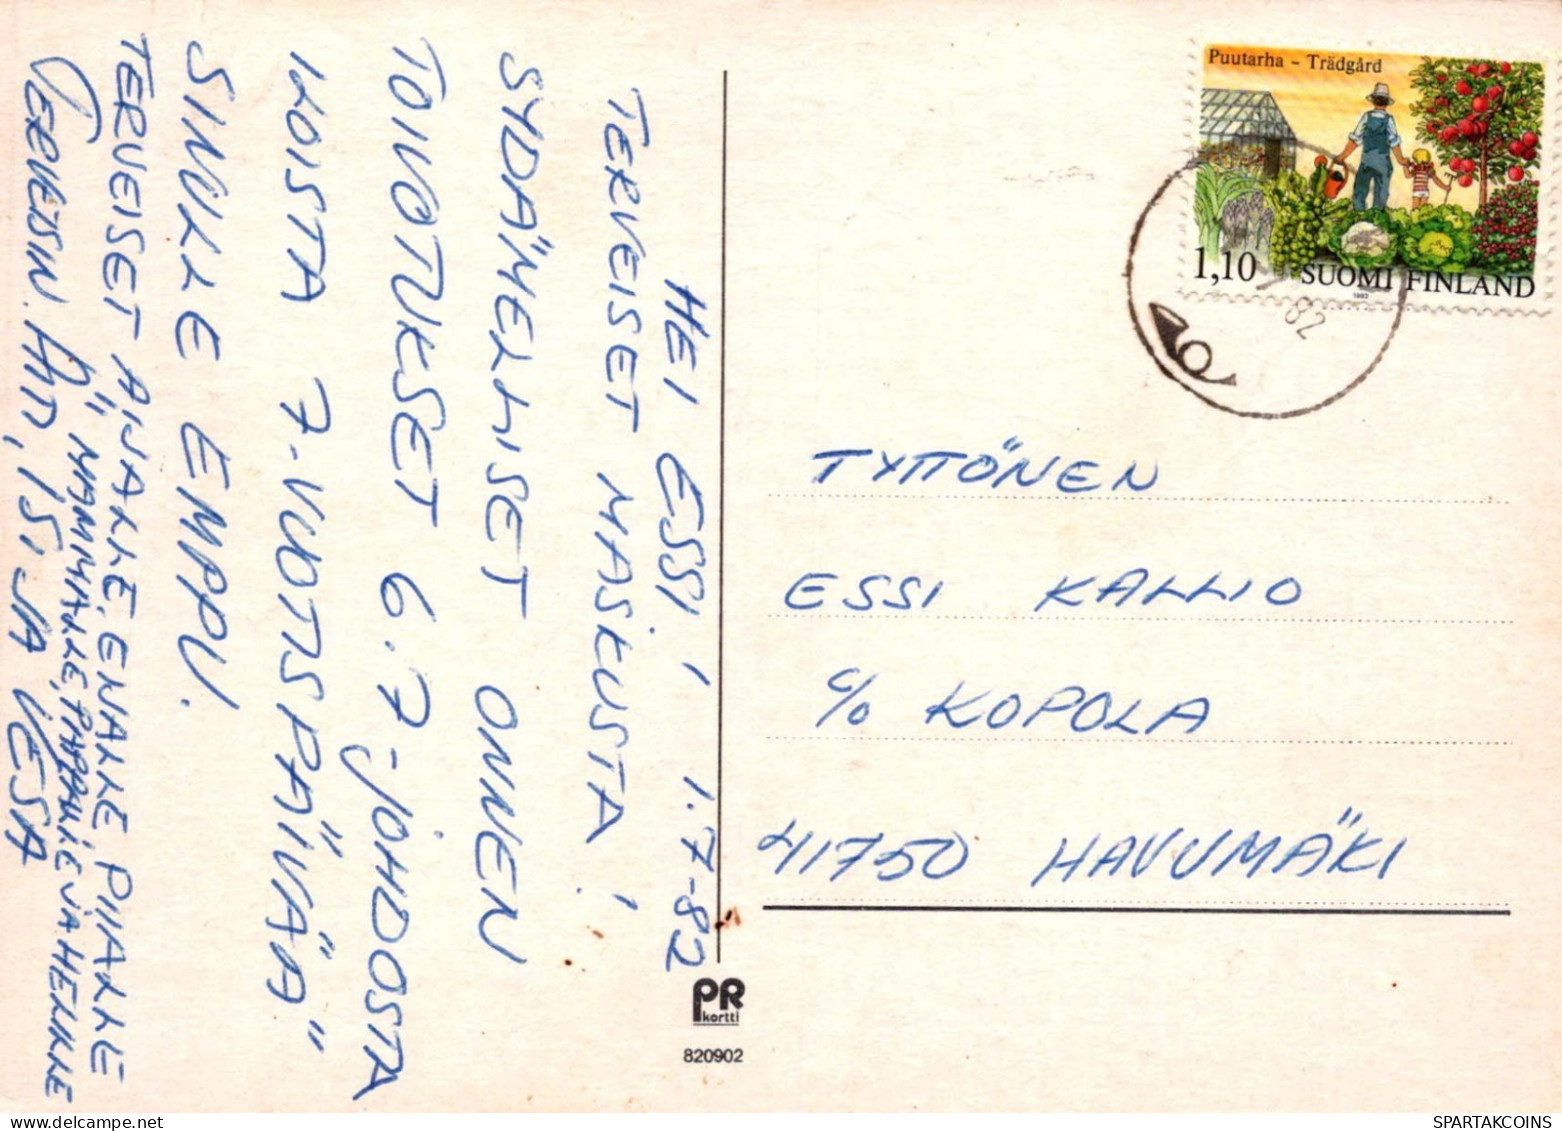 KINDER KINDER Szene S Landschafts Vintage Postal CPSM #PBT673.DE - Taferelen En Landschappen